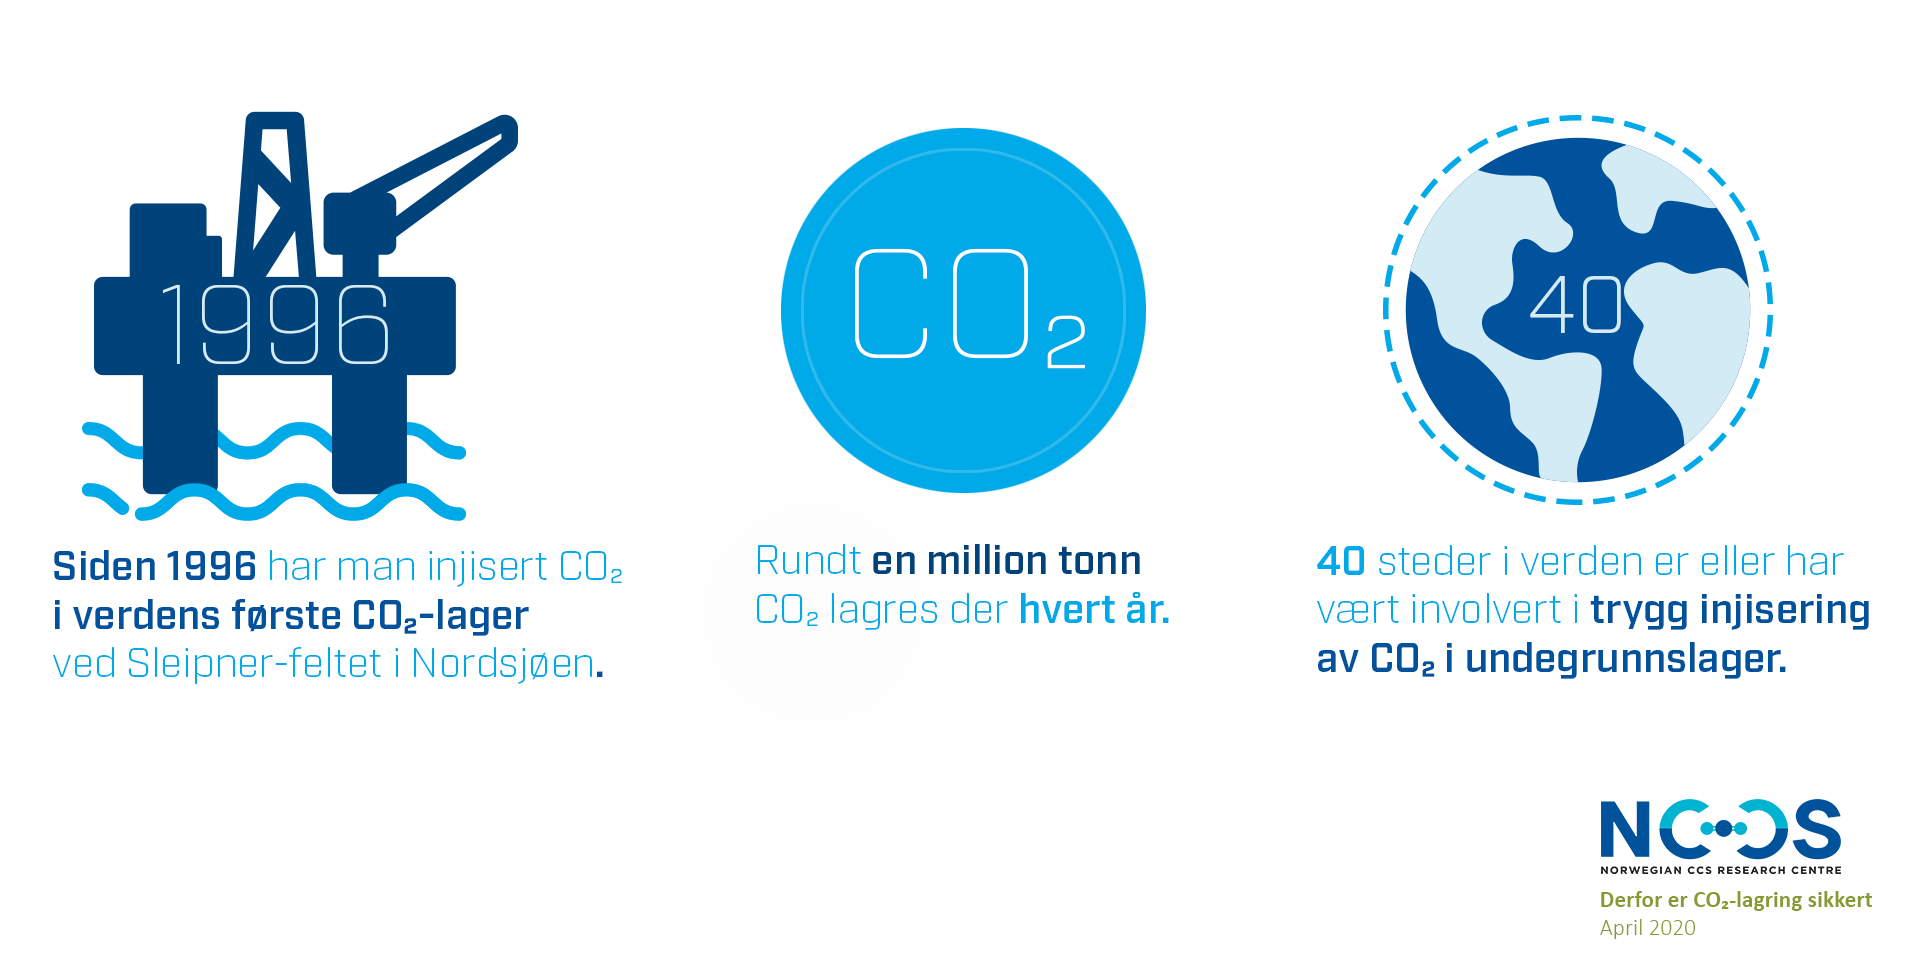 Rundt en million tonn CO2 lagres der hvert år. CO2-lagring